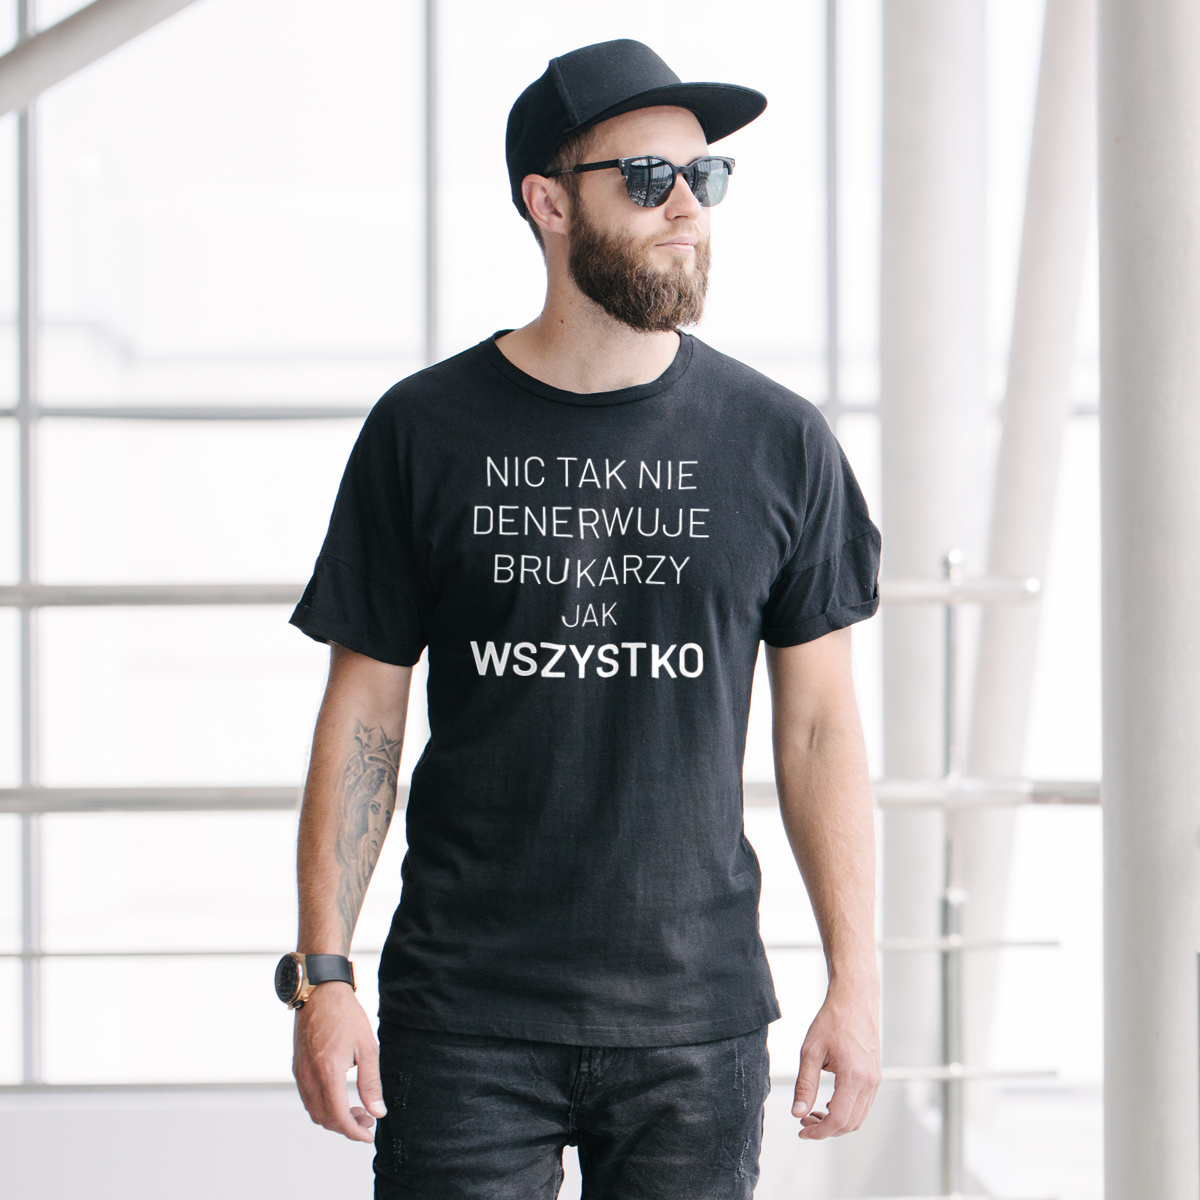 Nic Tak Nie Denerwuje Brukarzy Jak Wszystko - Męska Koszulka Czarna